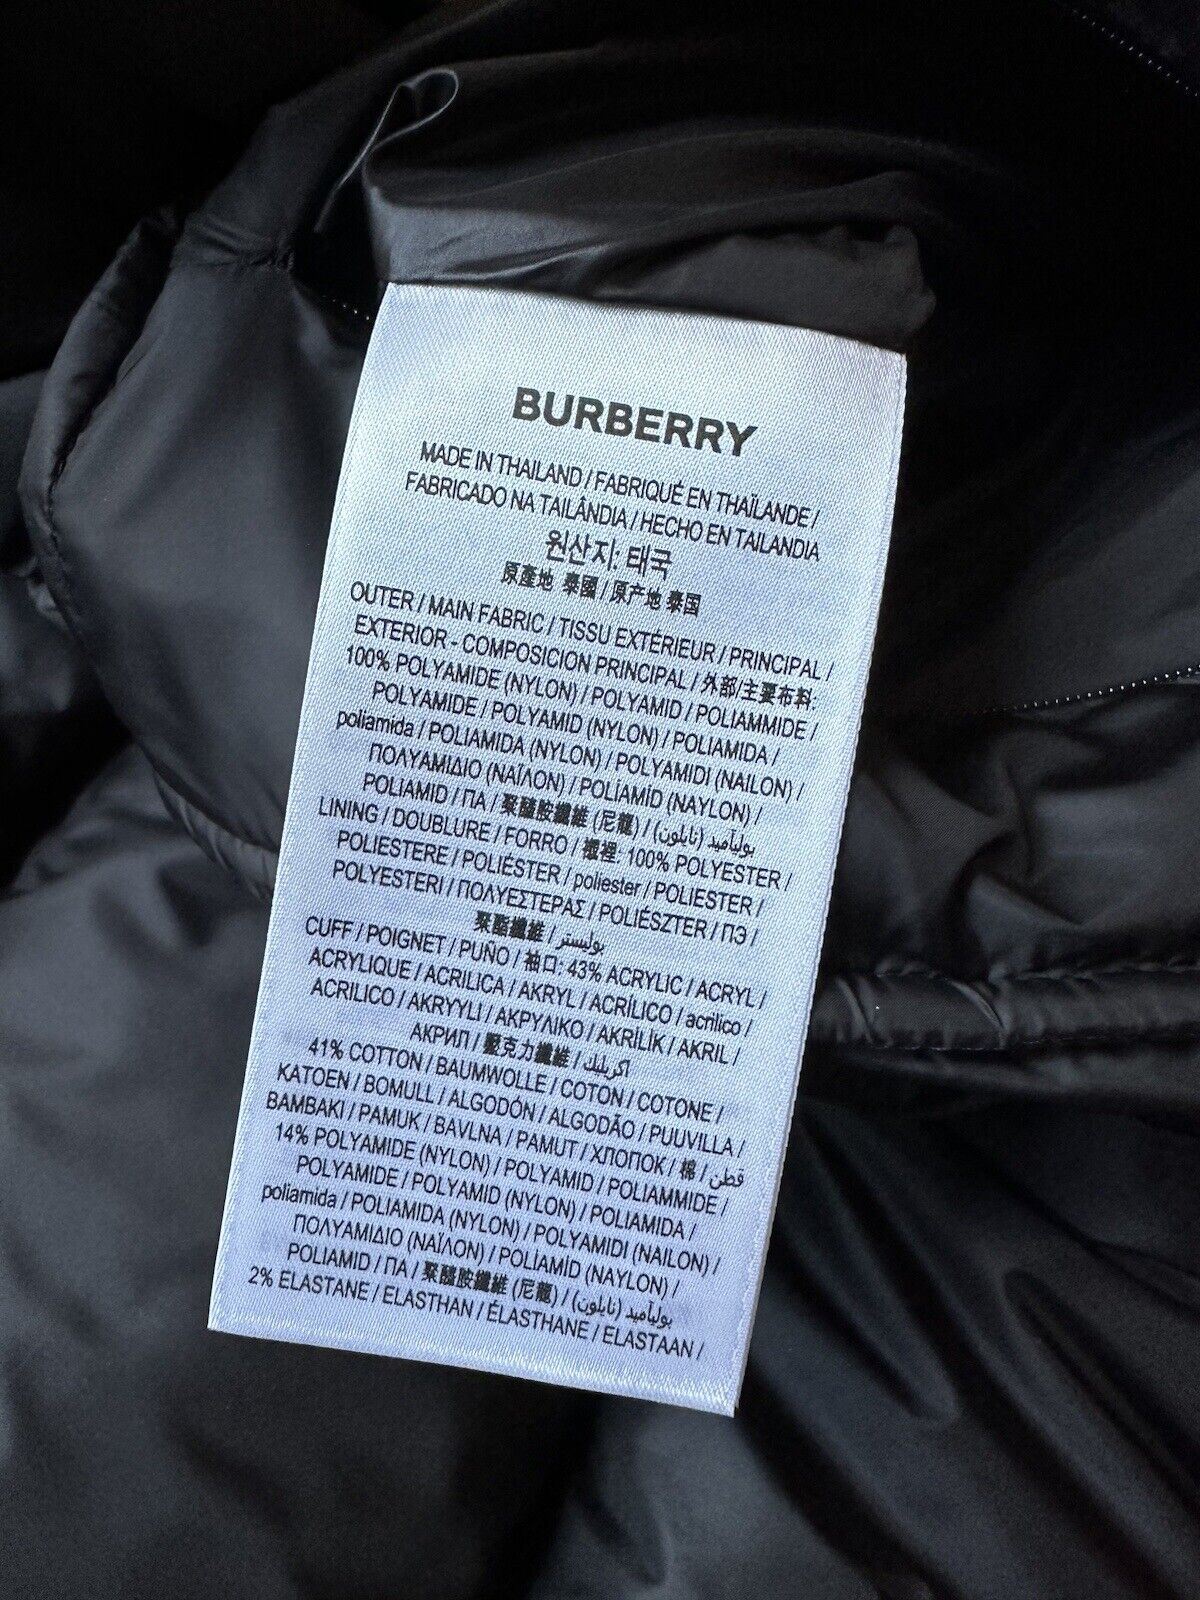 Женская куртка-пуховик с капюшоном Burberry London, NWT $1350, Soft Fawn Medium 8061337 